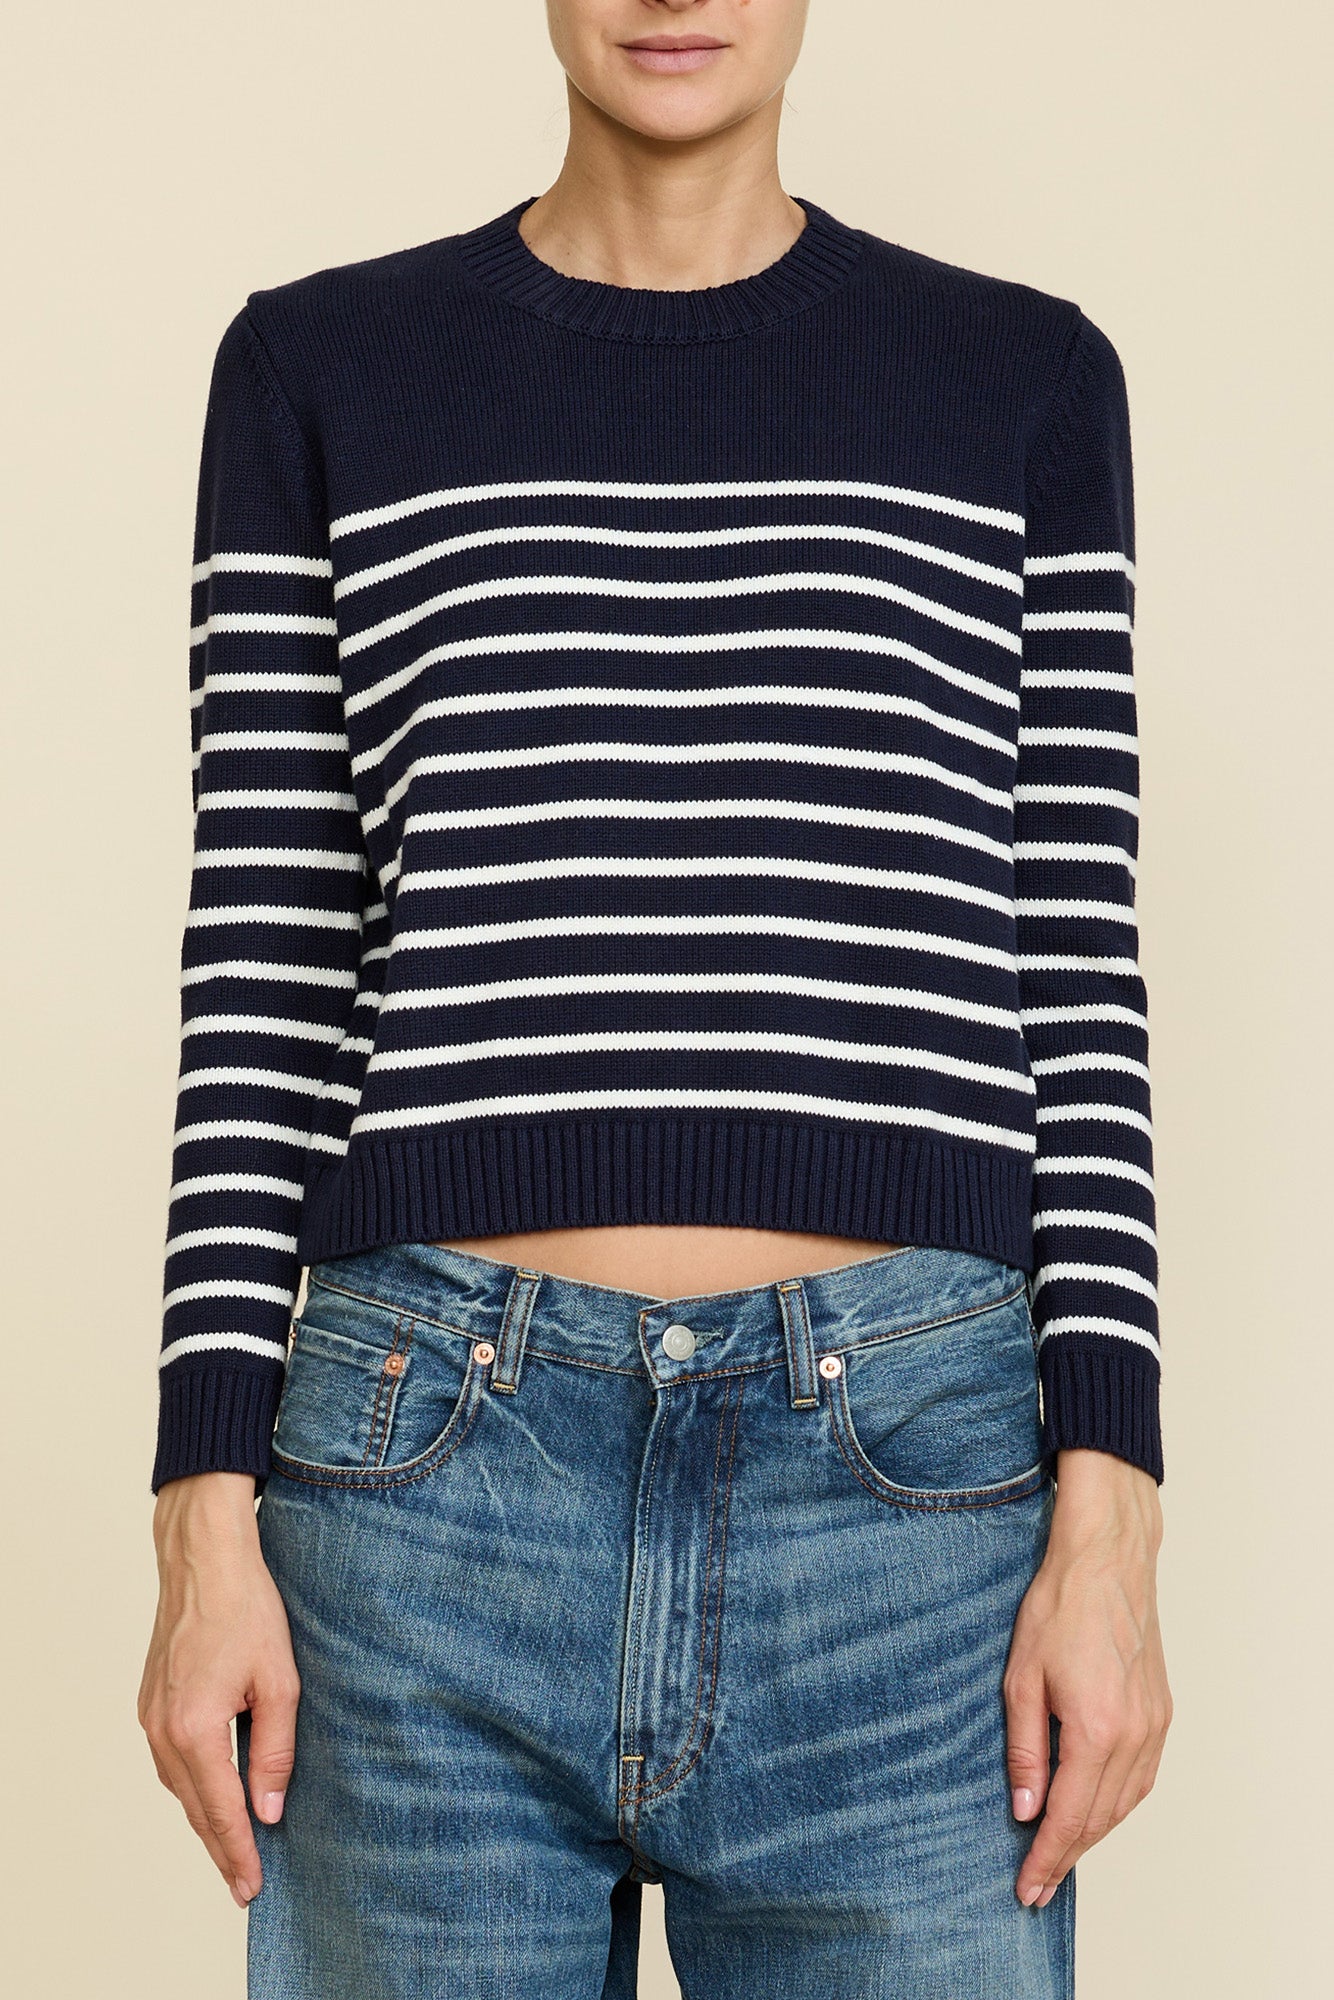 Striped Pullover Sweater - Dark Navy w/ Off-White